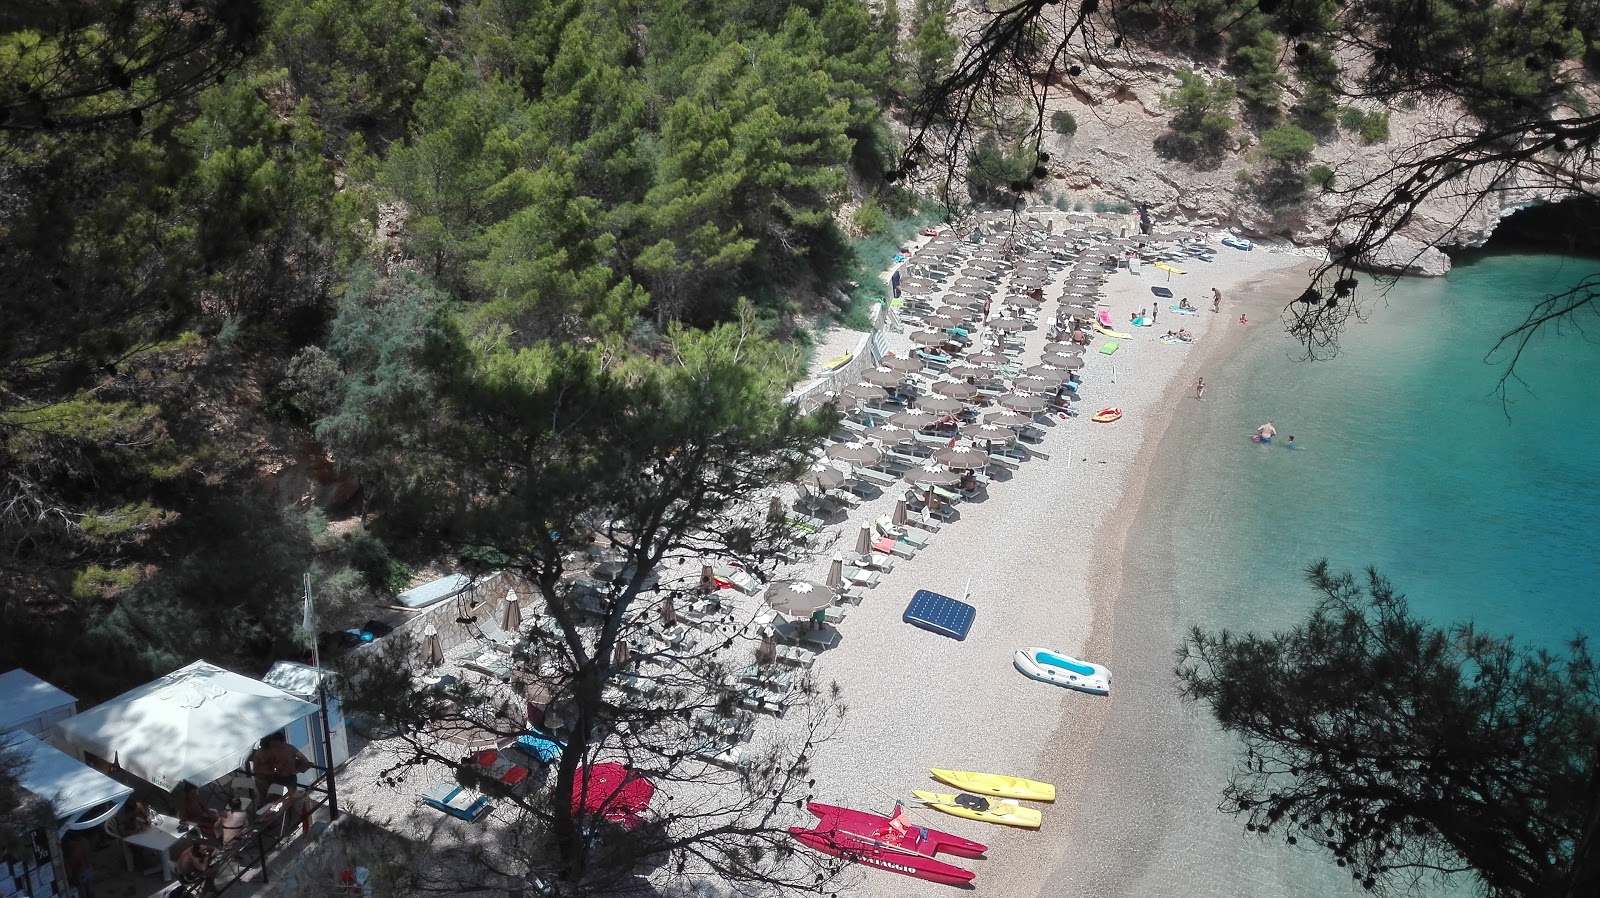 Photo of Spiaggia di Portopiatto with small bay